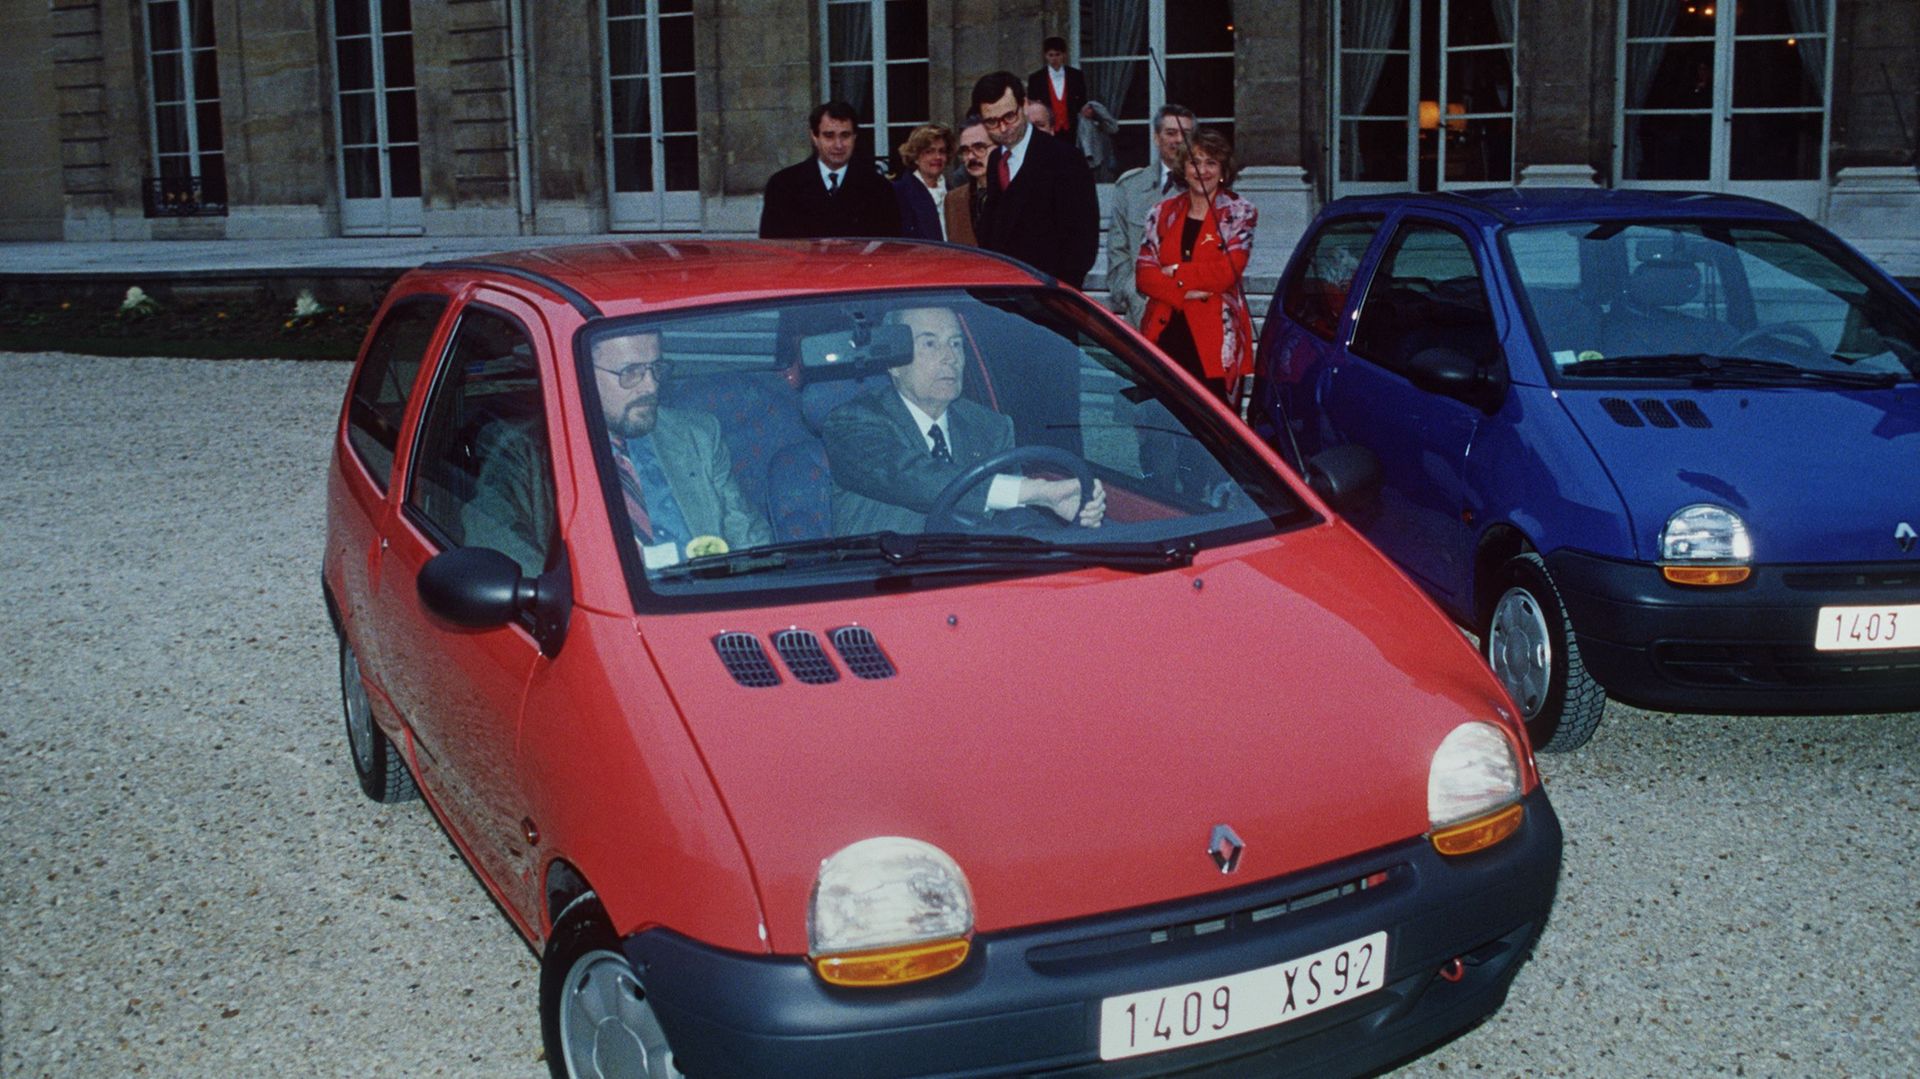 Renault arrête la Twingo : adieu les petites voitures populaires ...